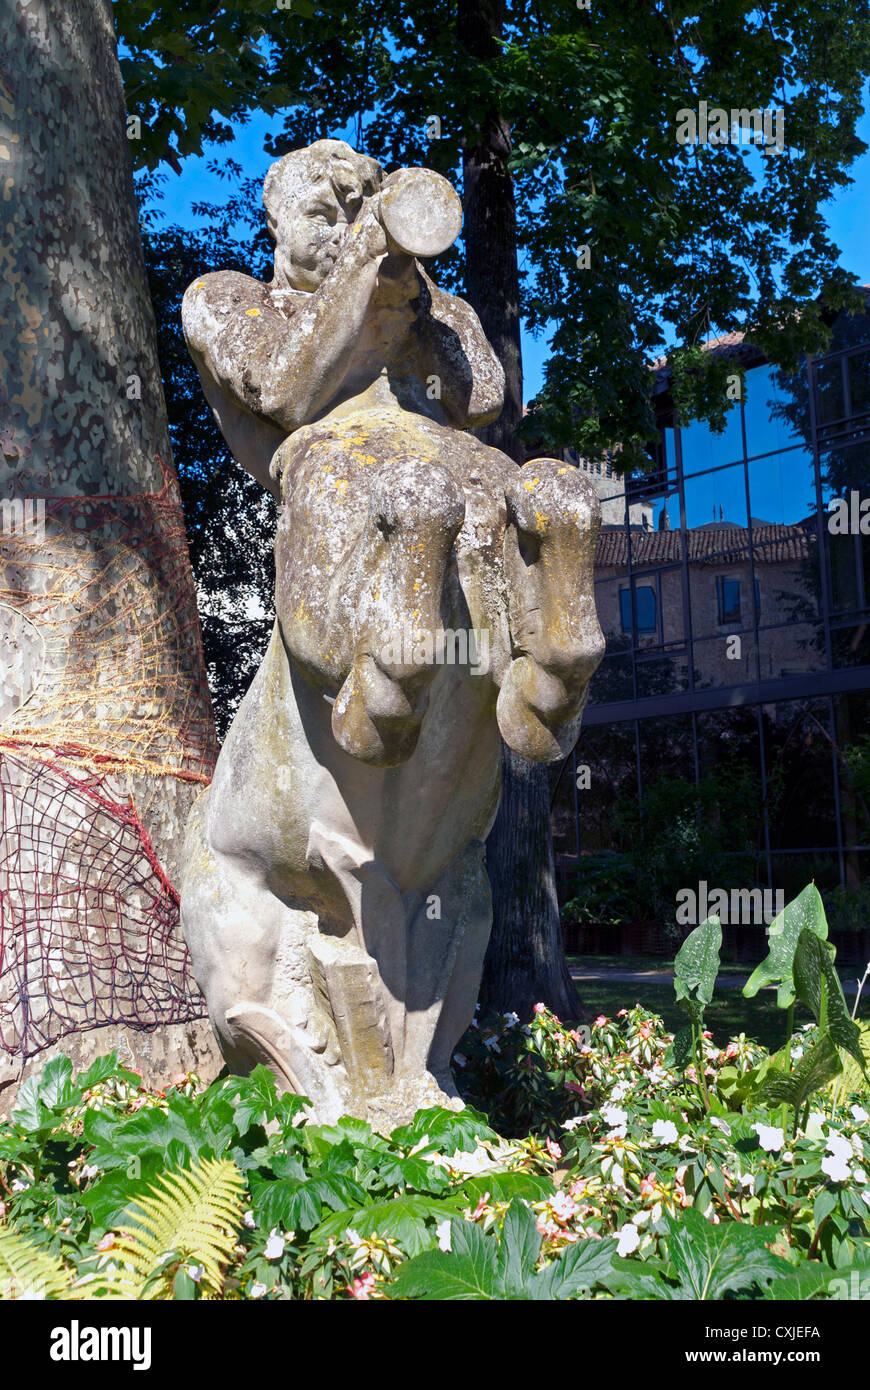 Statue de pierre à Cahors, France Banque D'Images